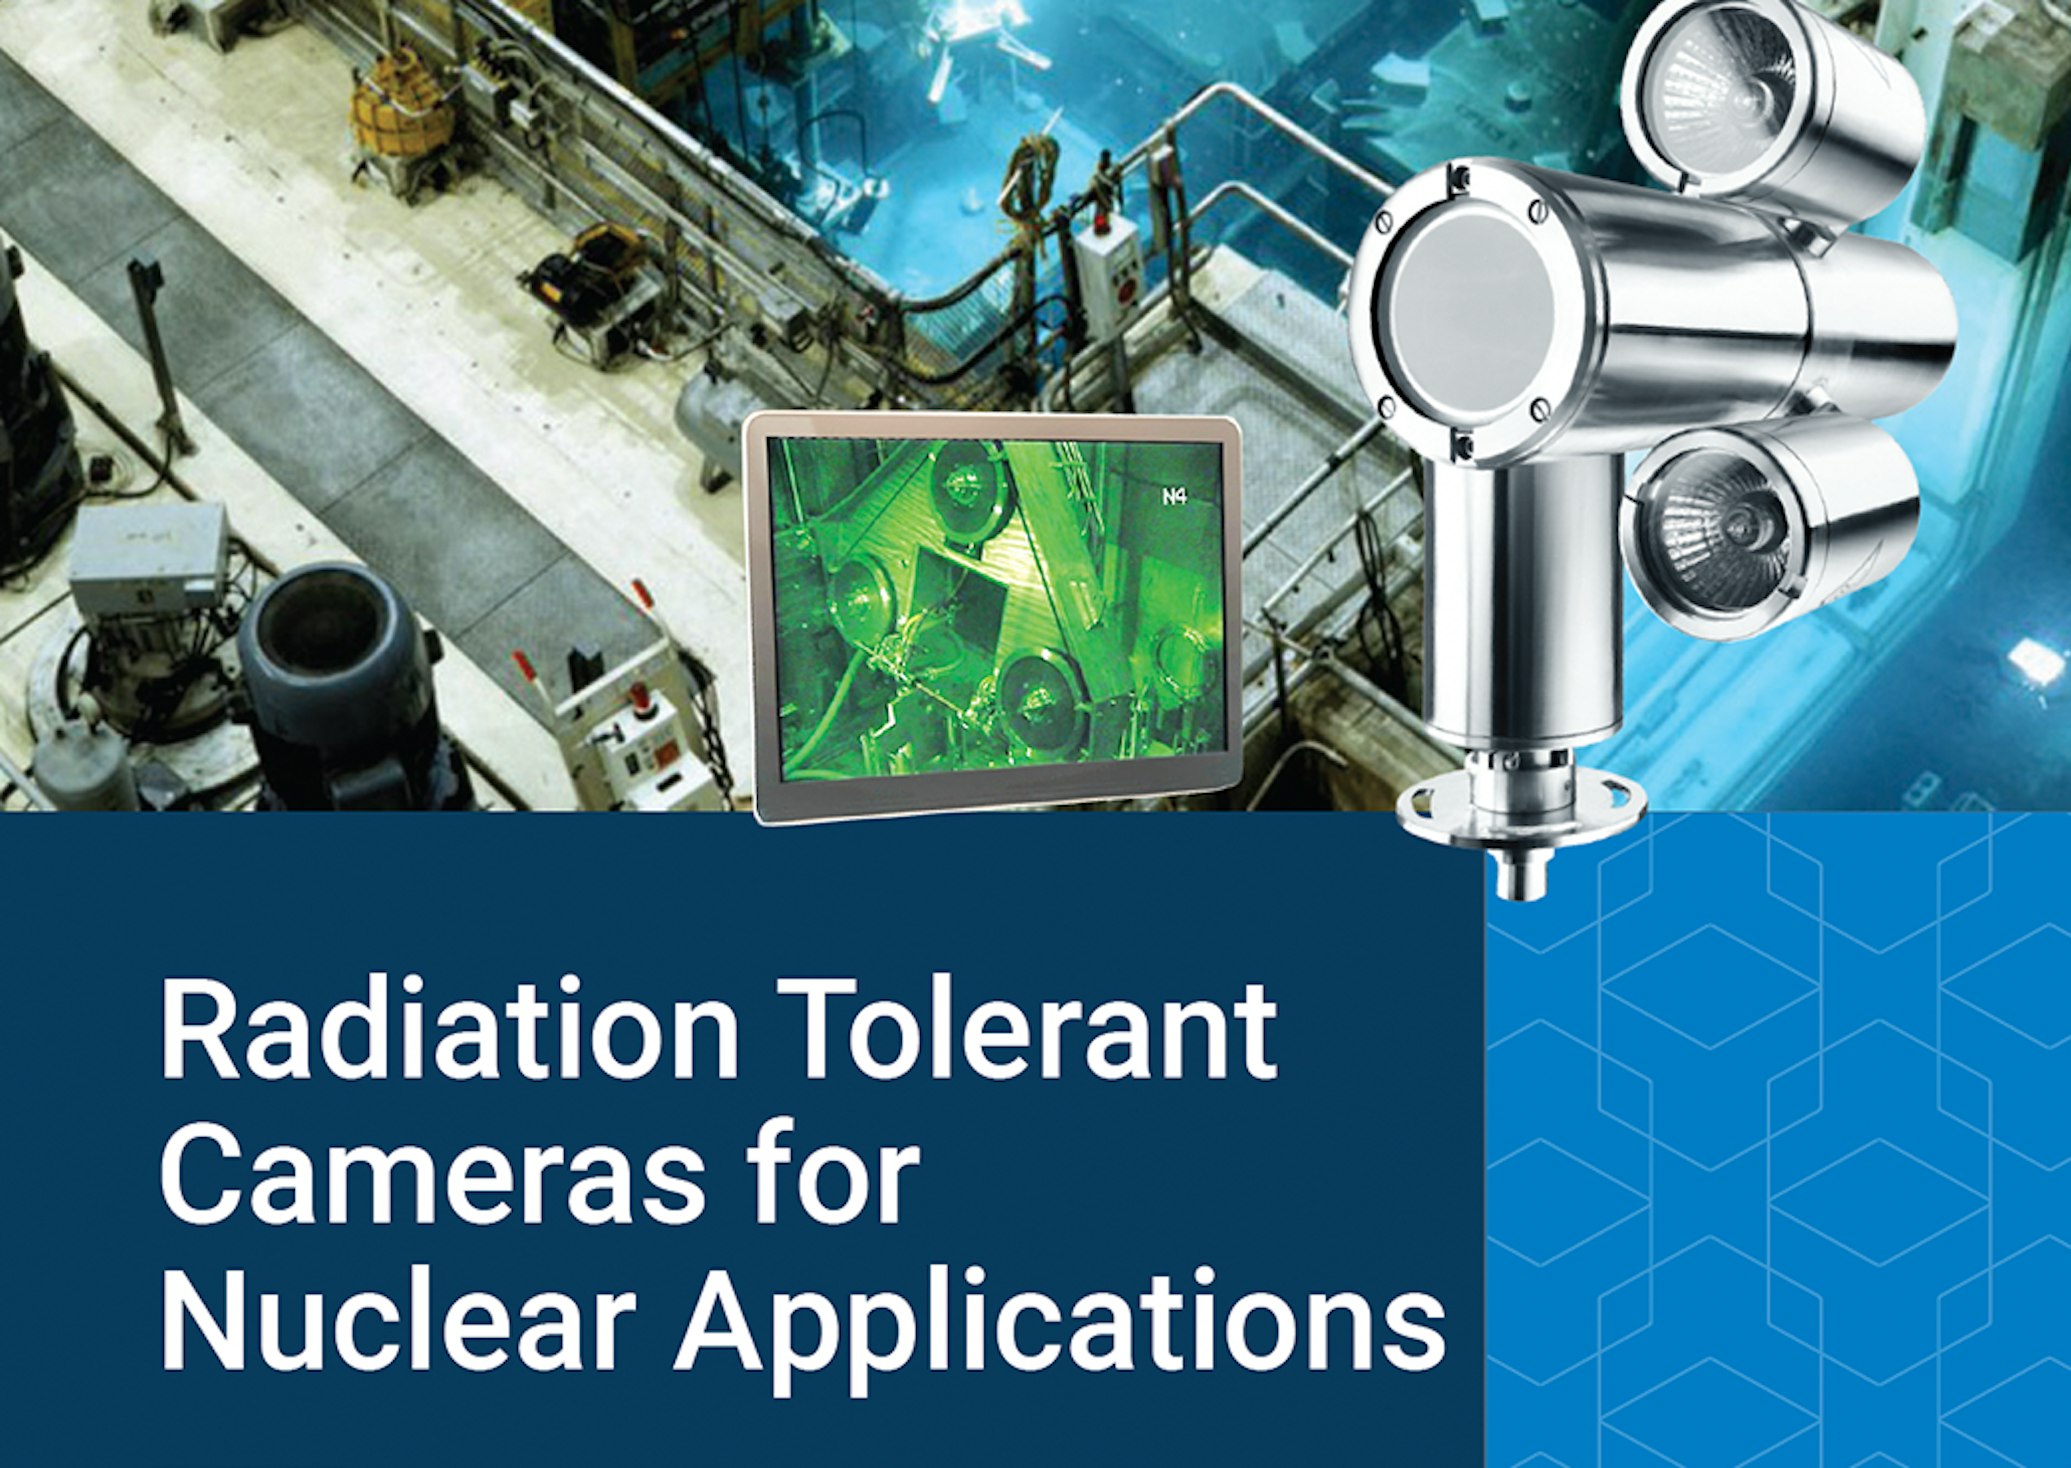 Radiation tolerant cameras brochure